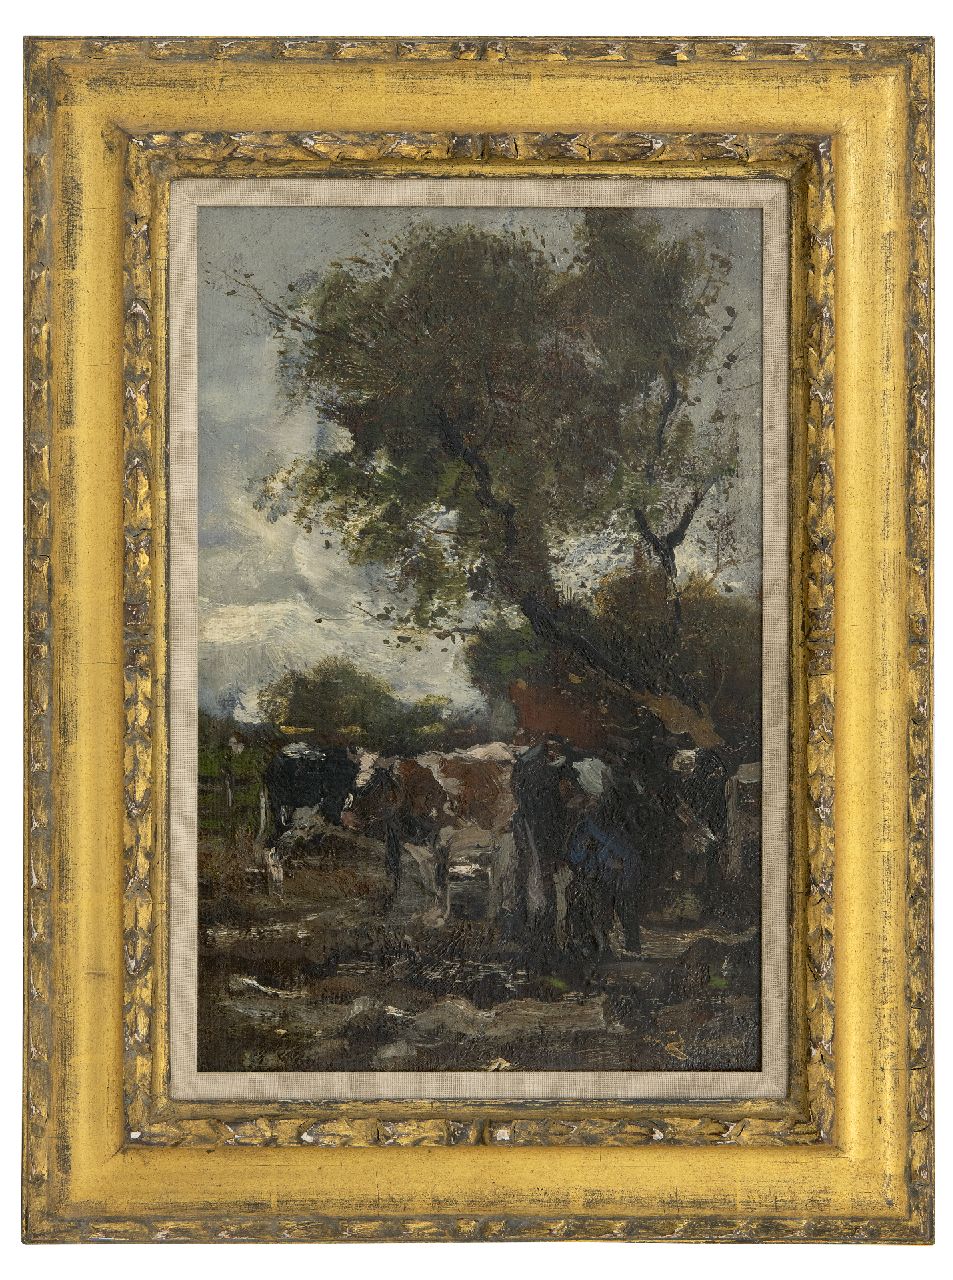 Jansen W.G.F.  | 'Willem' George Frederik Jansen | Schilderijen te koop aangeboden | Melkbocht, olieverf op doek op paneel 41,1 x 27,3 cm, gesigneerd rechtsonder